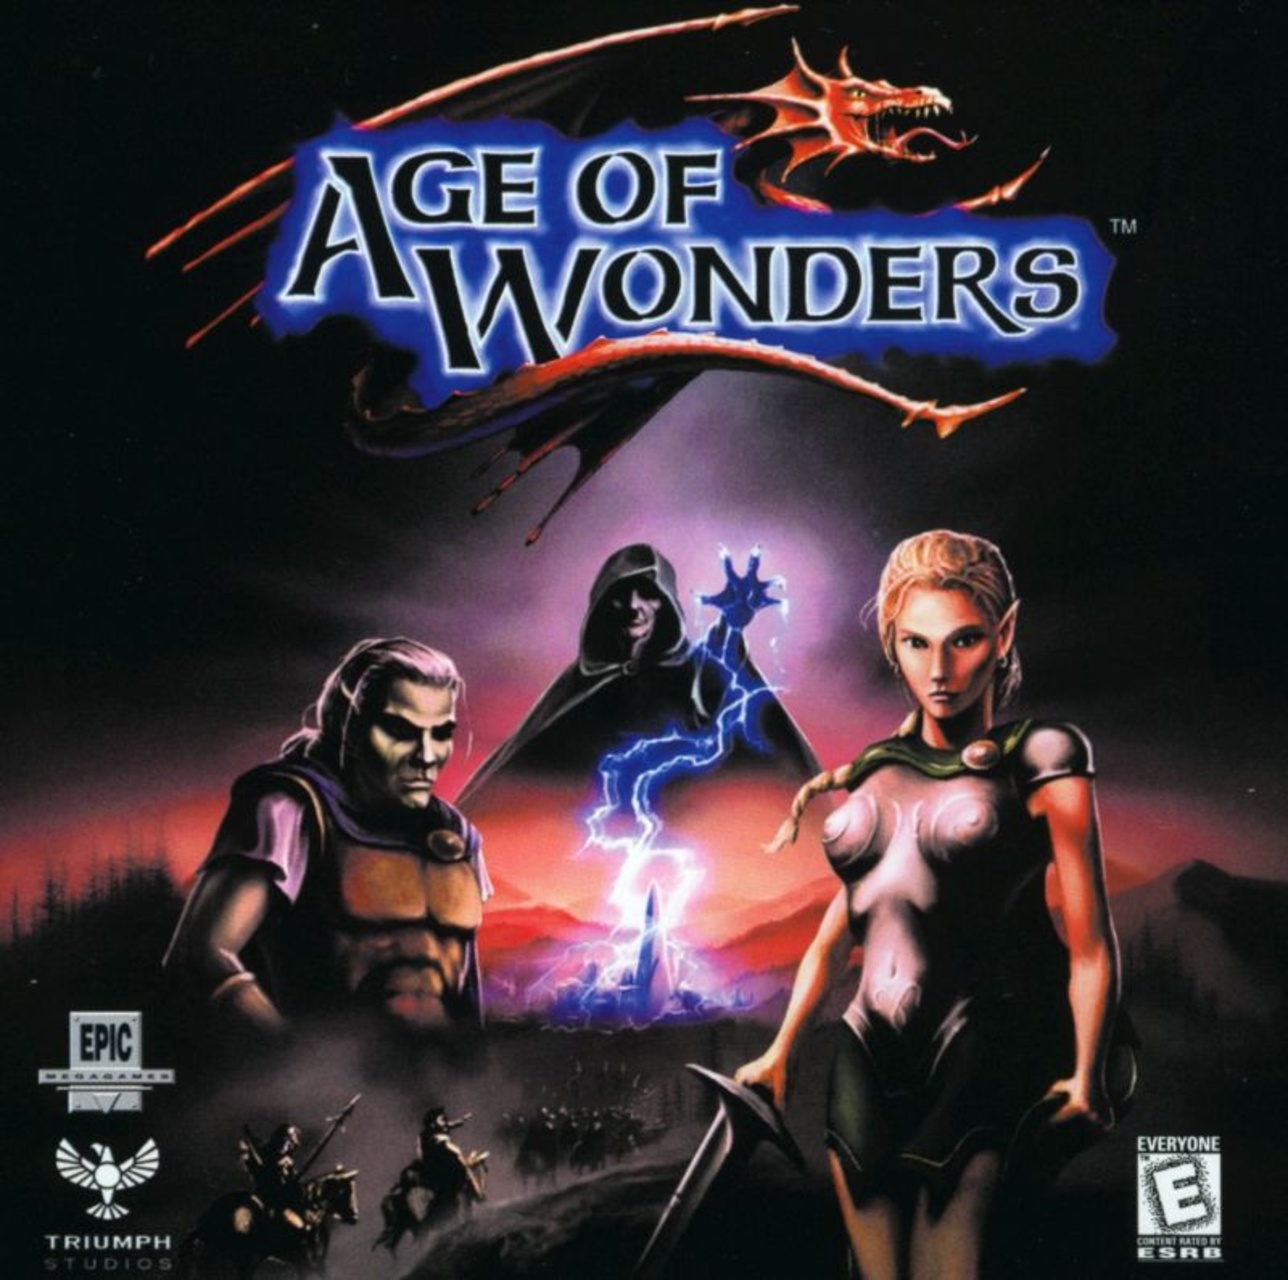 age of wonders races -iii, -ii, -planetfall 1999